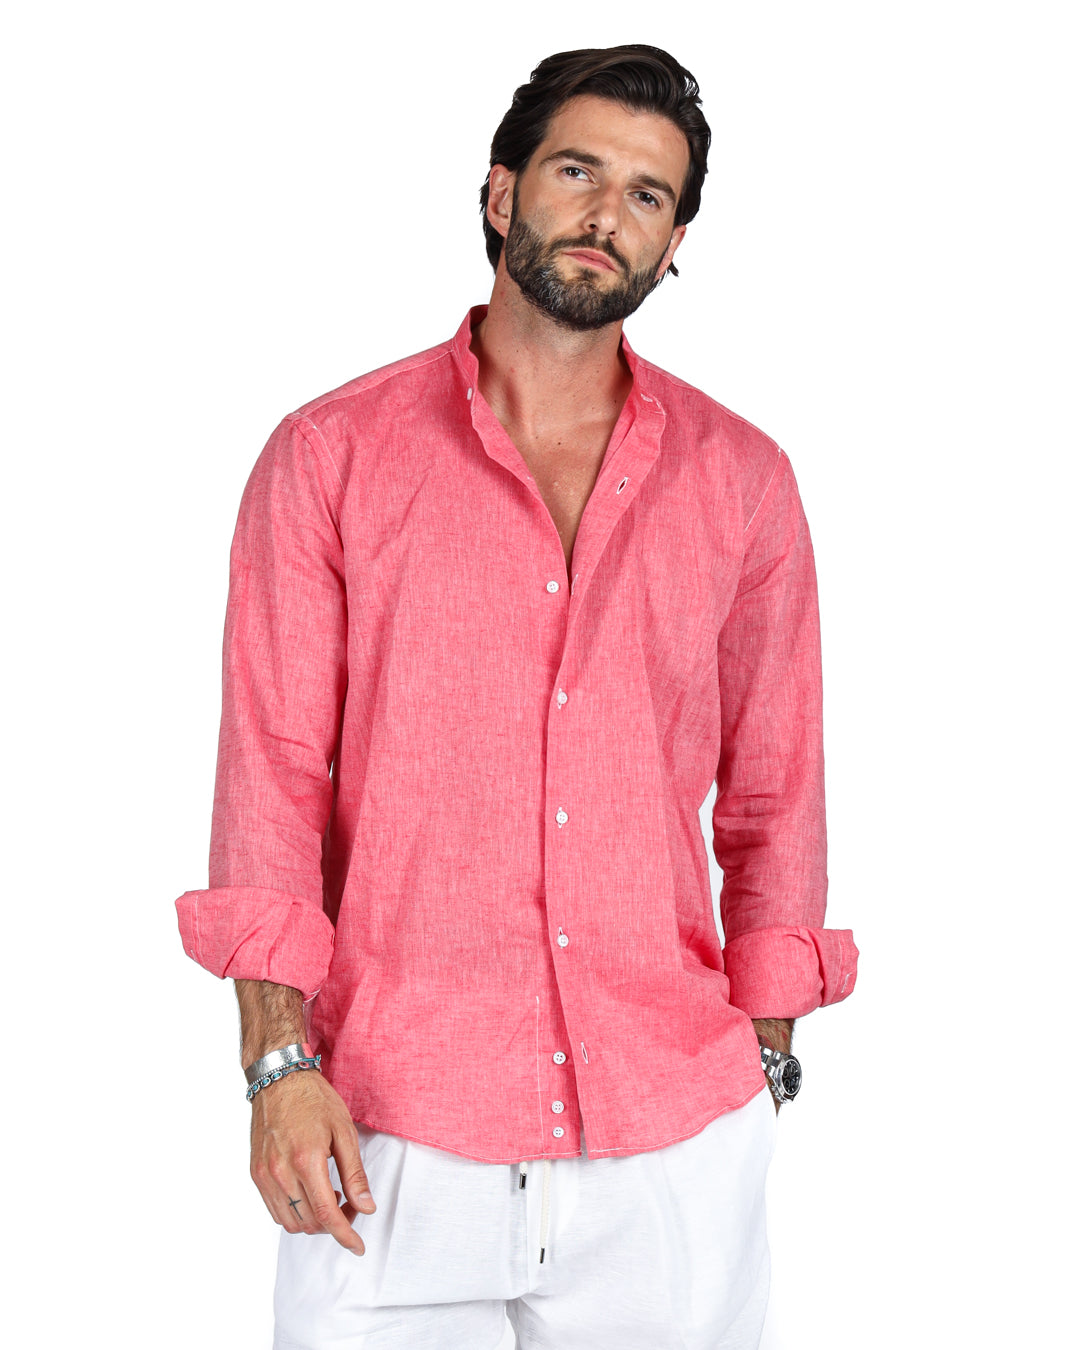 Positano - Coral Korean linen shirt